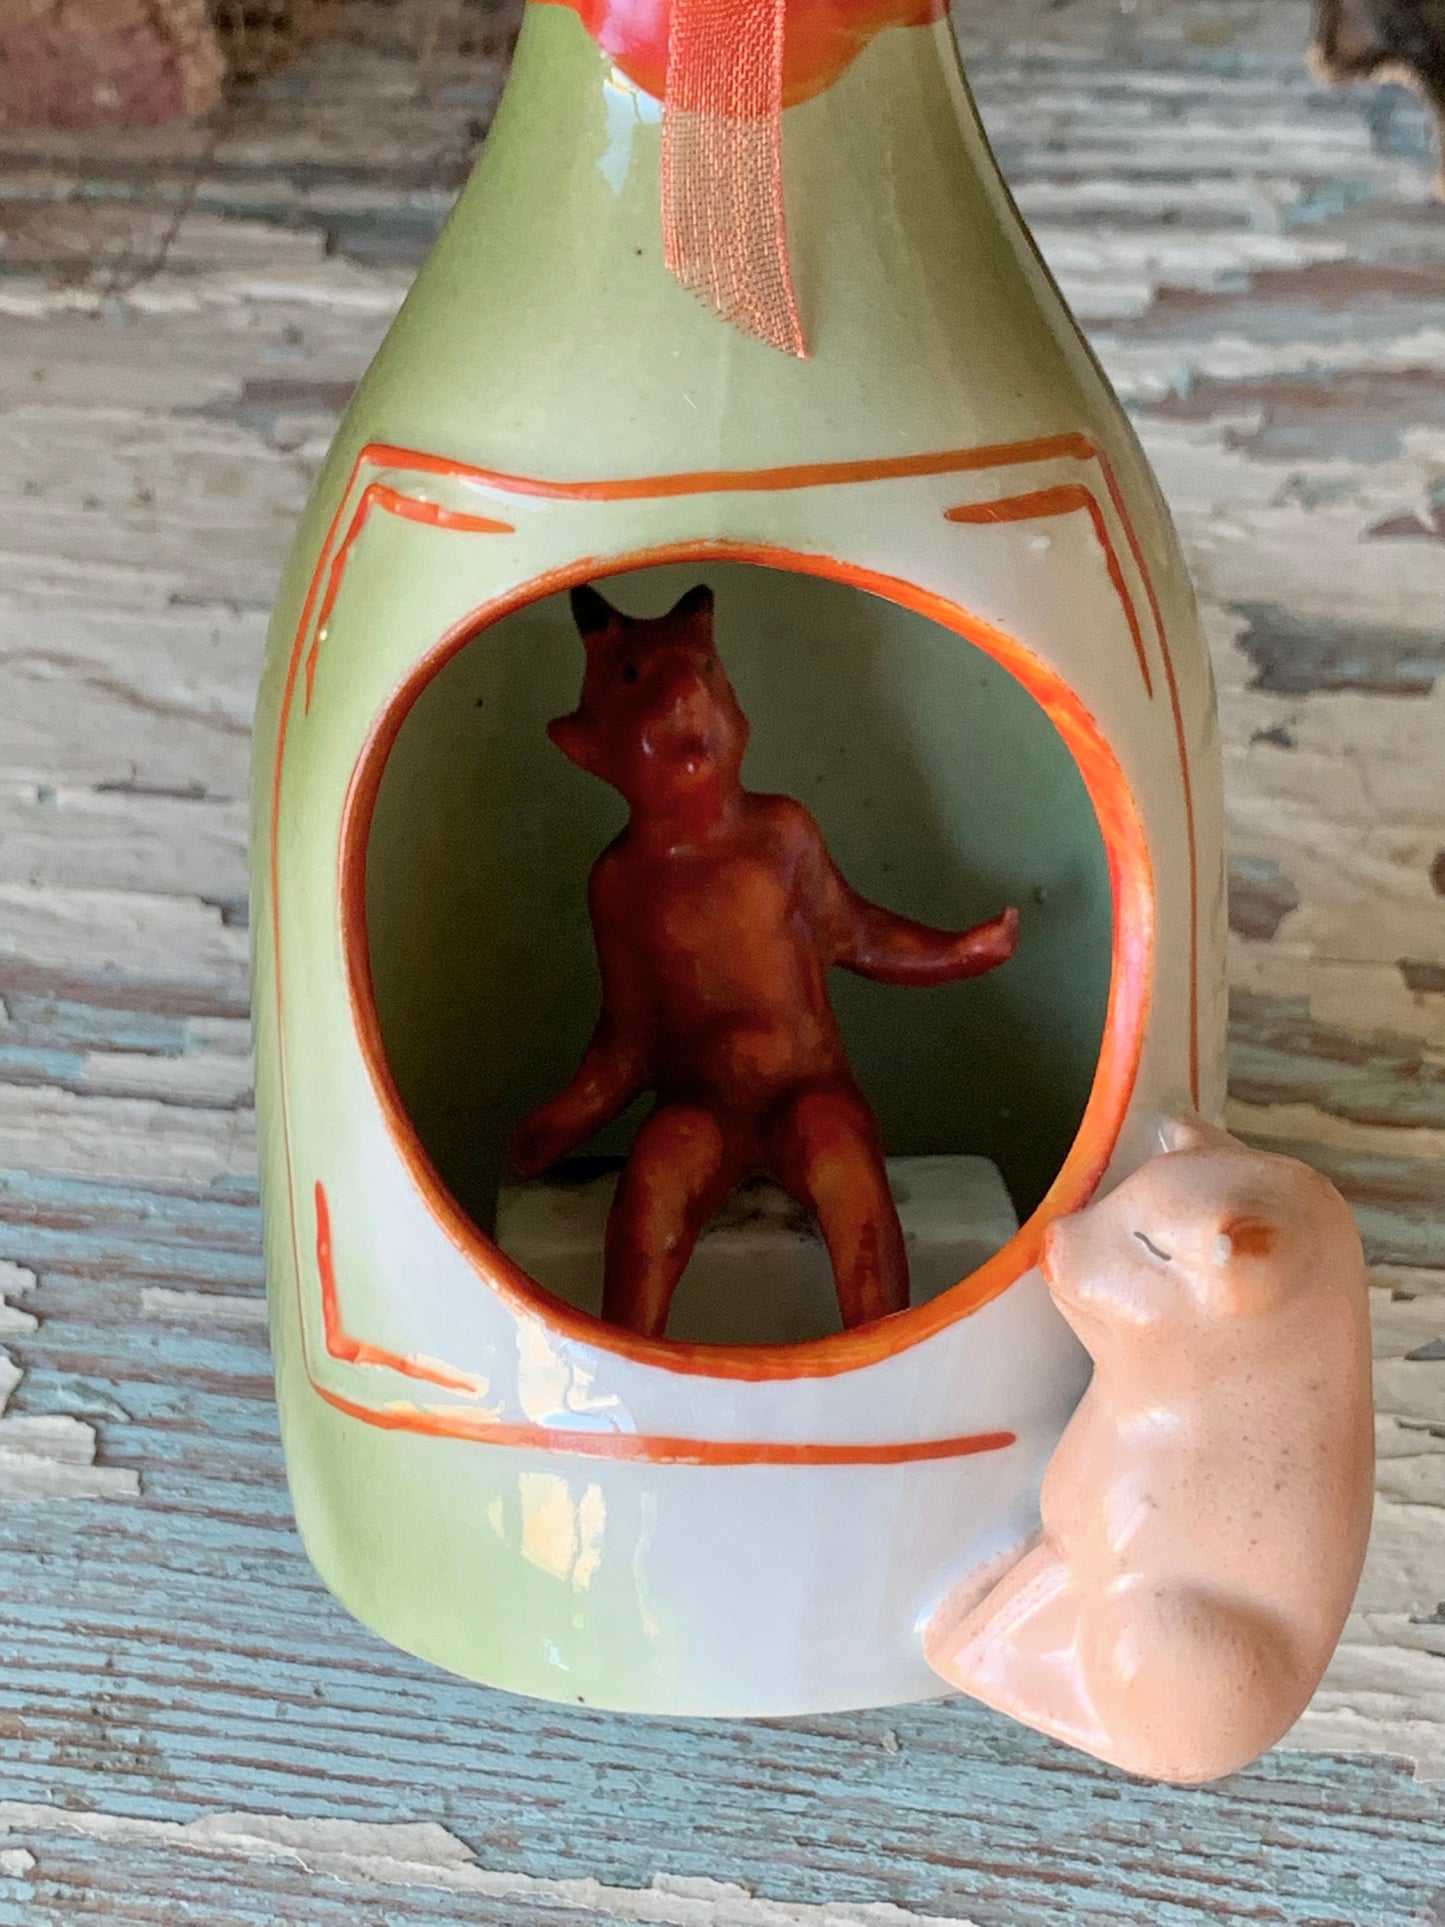 Antique porcelain devil and pig bottle figurine